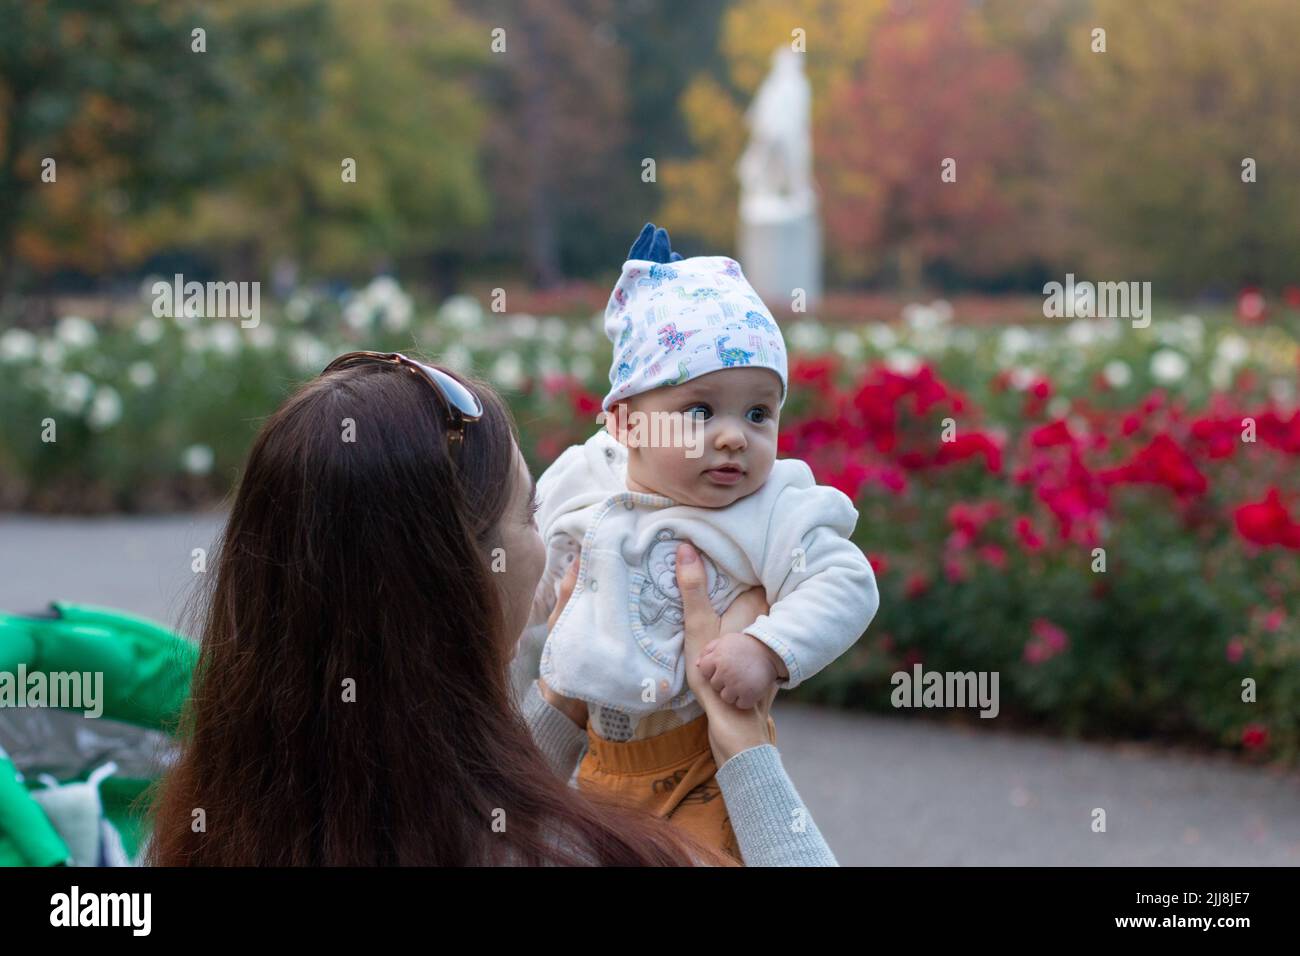 Mutter hält niedliches Baby in den Händen im Freien im Blumen-Garten-Park, Herbst Natur Hintergrund Stockfoto